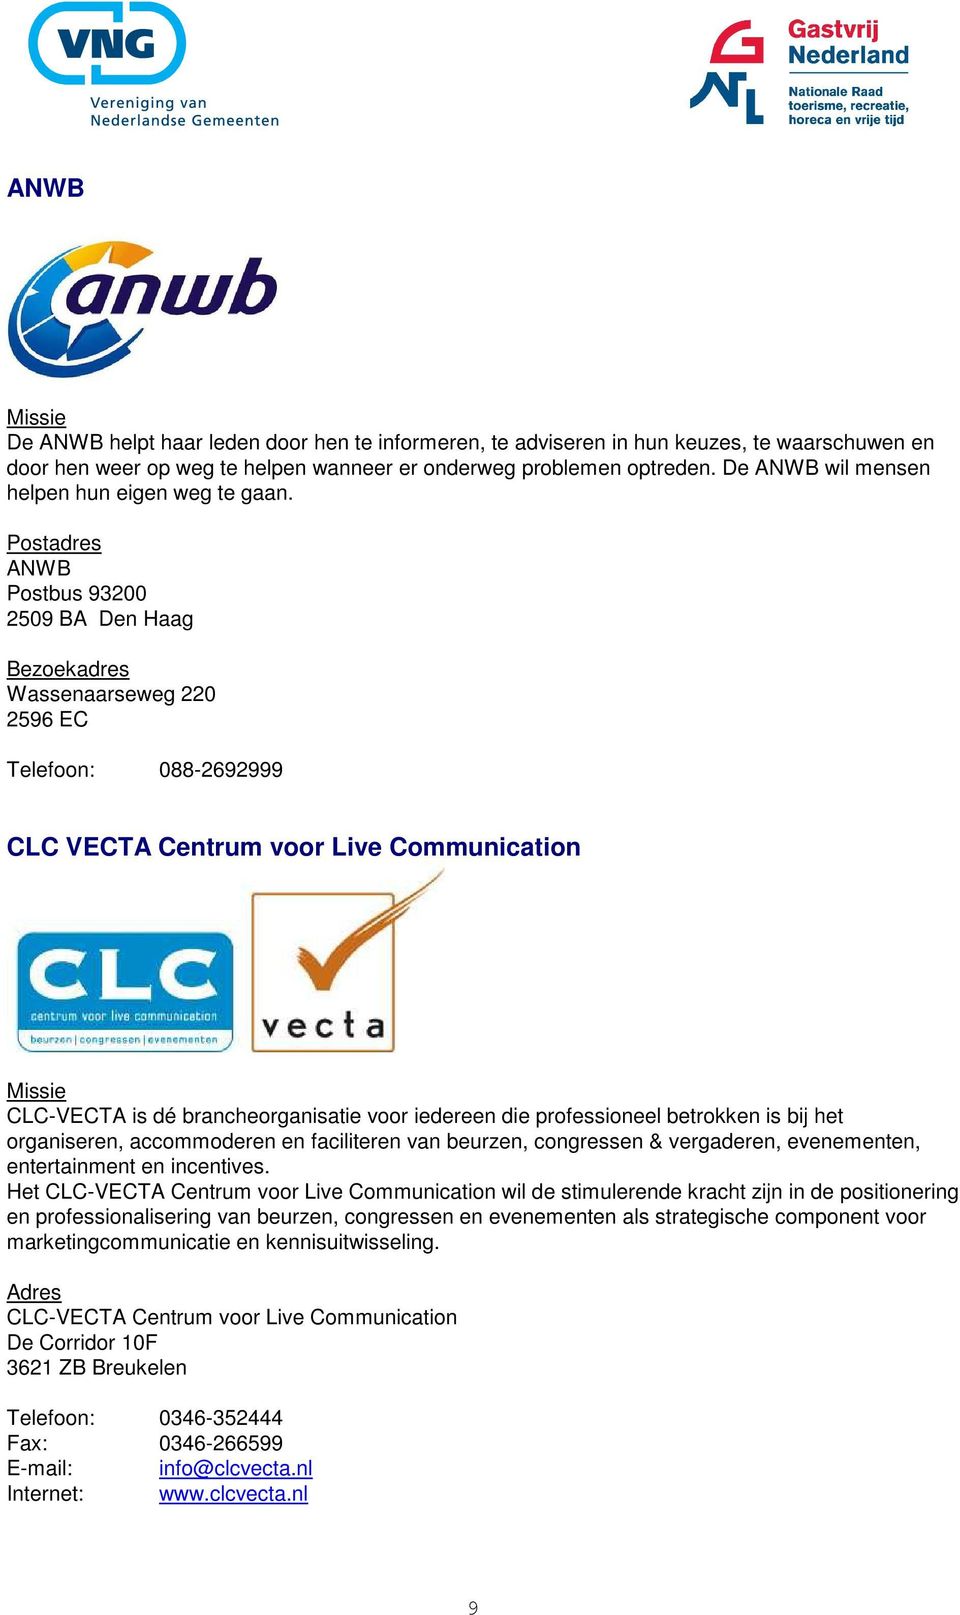 ANWB Postbus 93200 2509 BA Den Haag Wassenaarseweg 220 2596 EC Telefoon: 088-2692999 CLC VECTA Centrum voor Live Communication CLC-VECTA is dé brancheorganisatie voor iedereen die professioneel